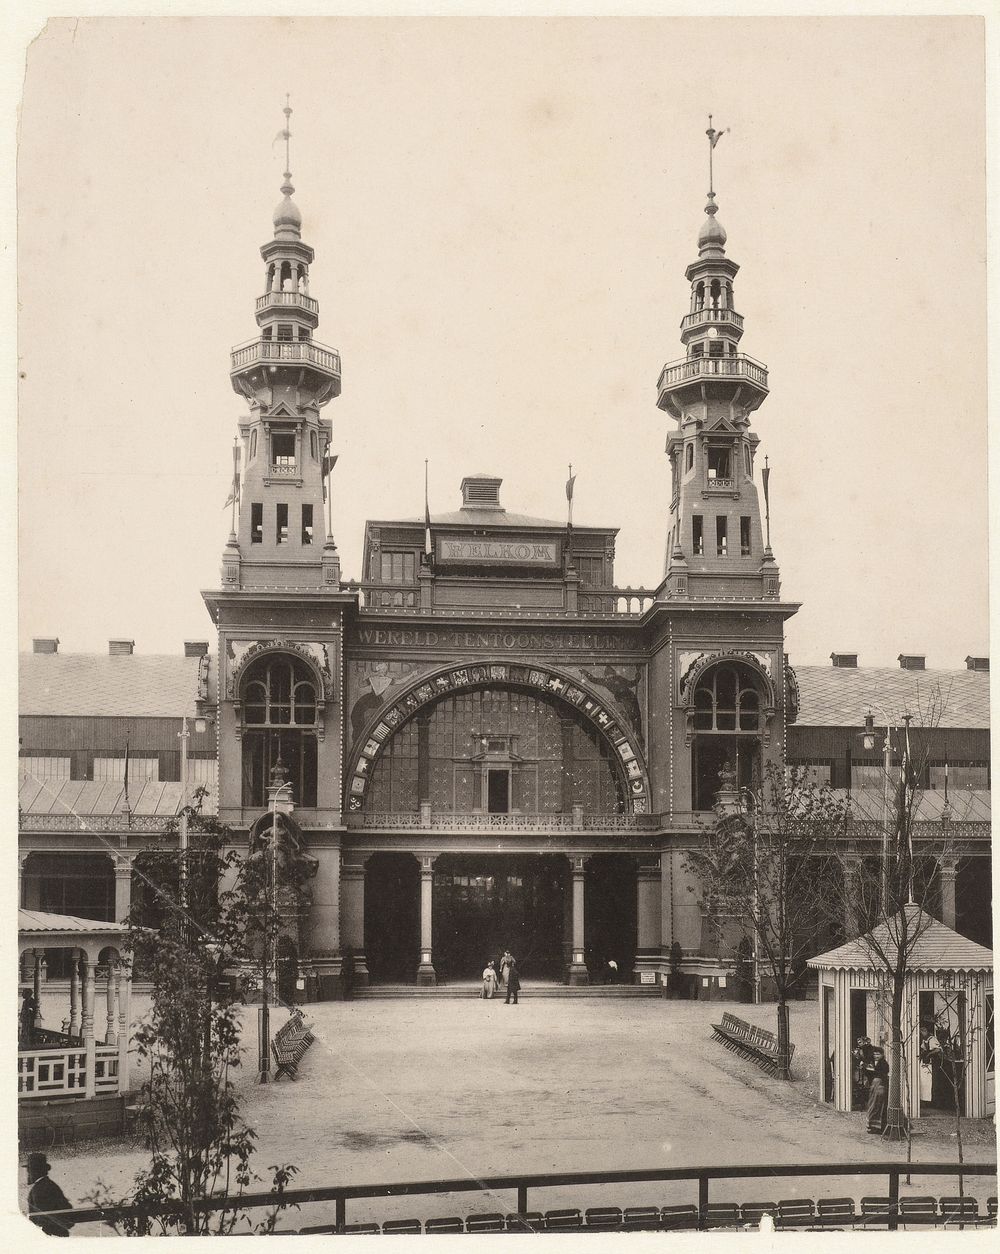 Ingangspoort Wereldtentoonstelling op het Museumplein,  Amsterdam 1895 (1895) by Guy de Coral and Co